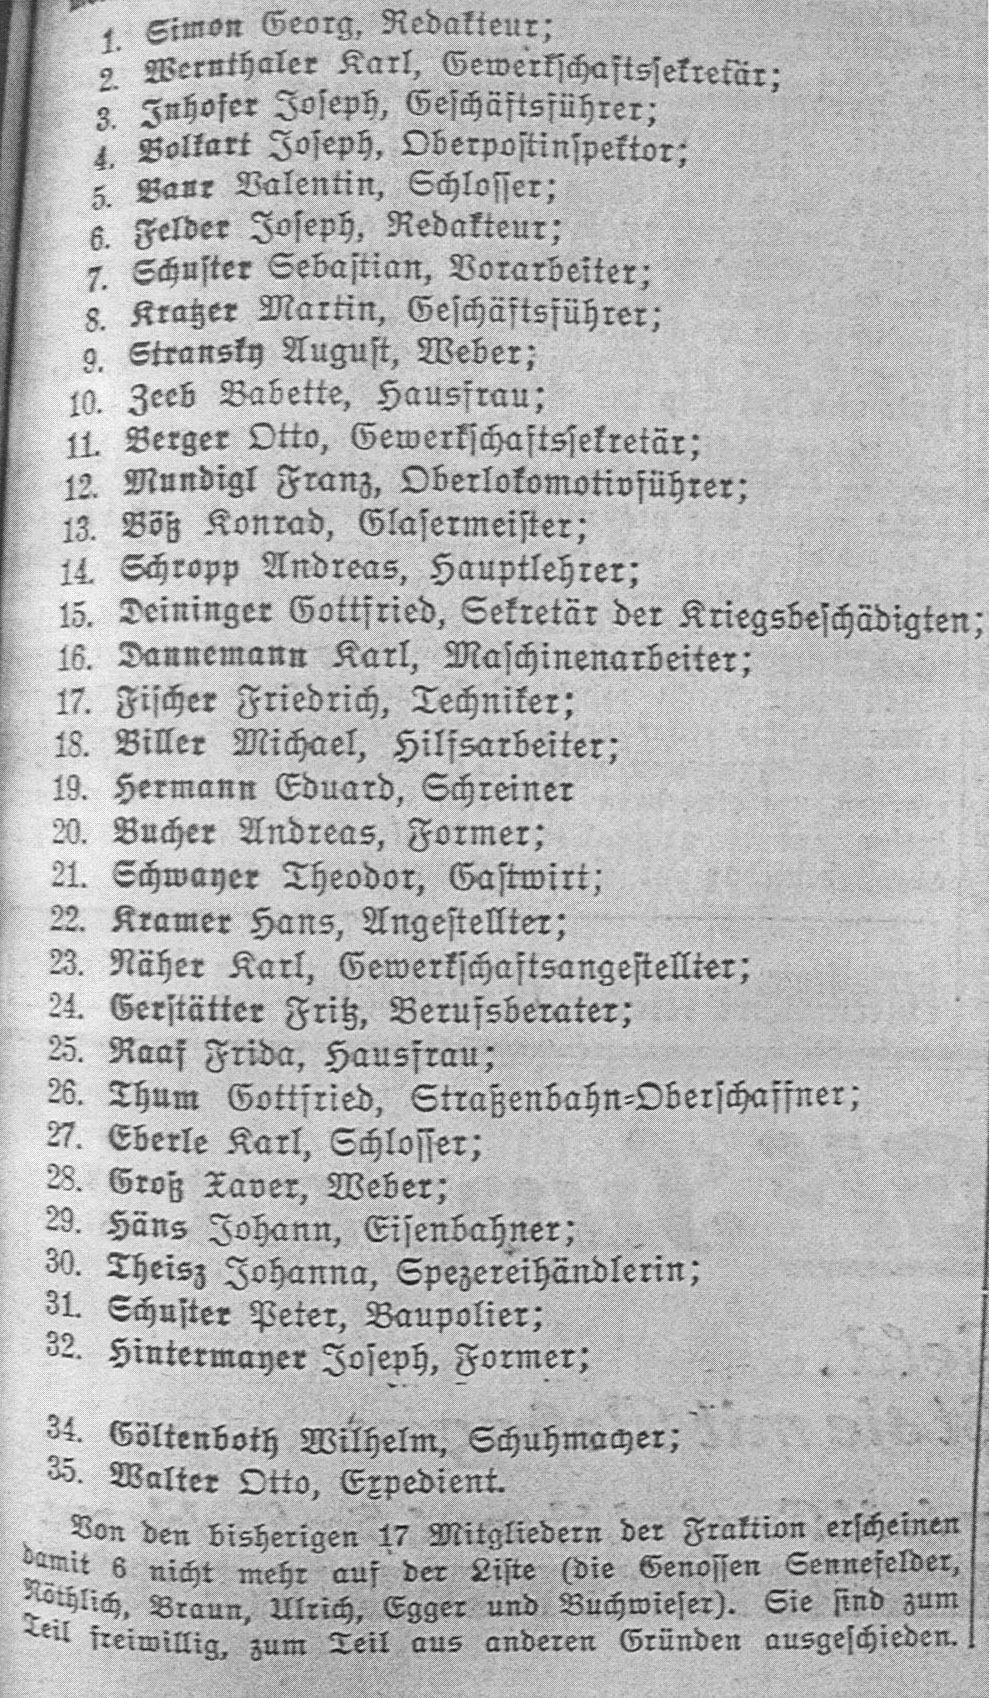 Die Stadtrats-Kandidaten der SPD in Augsburg am 28.10.1929